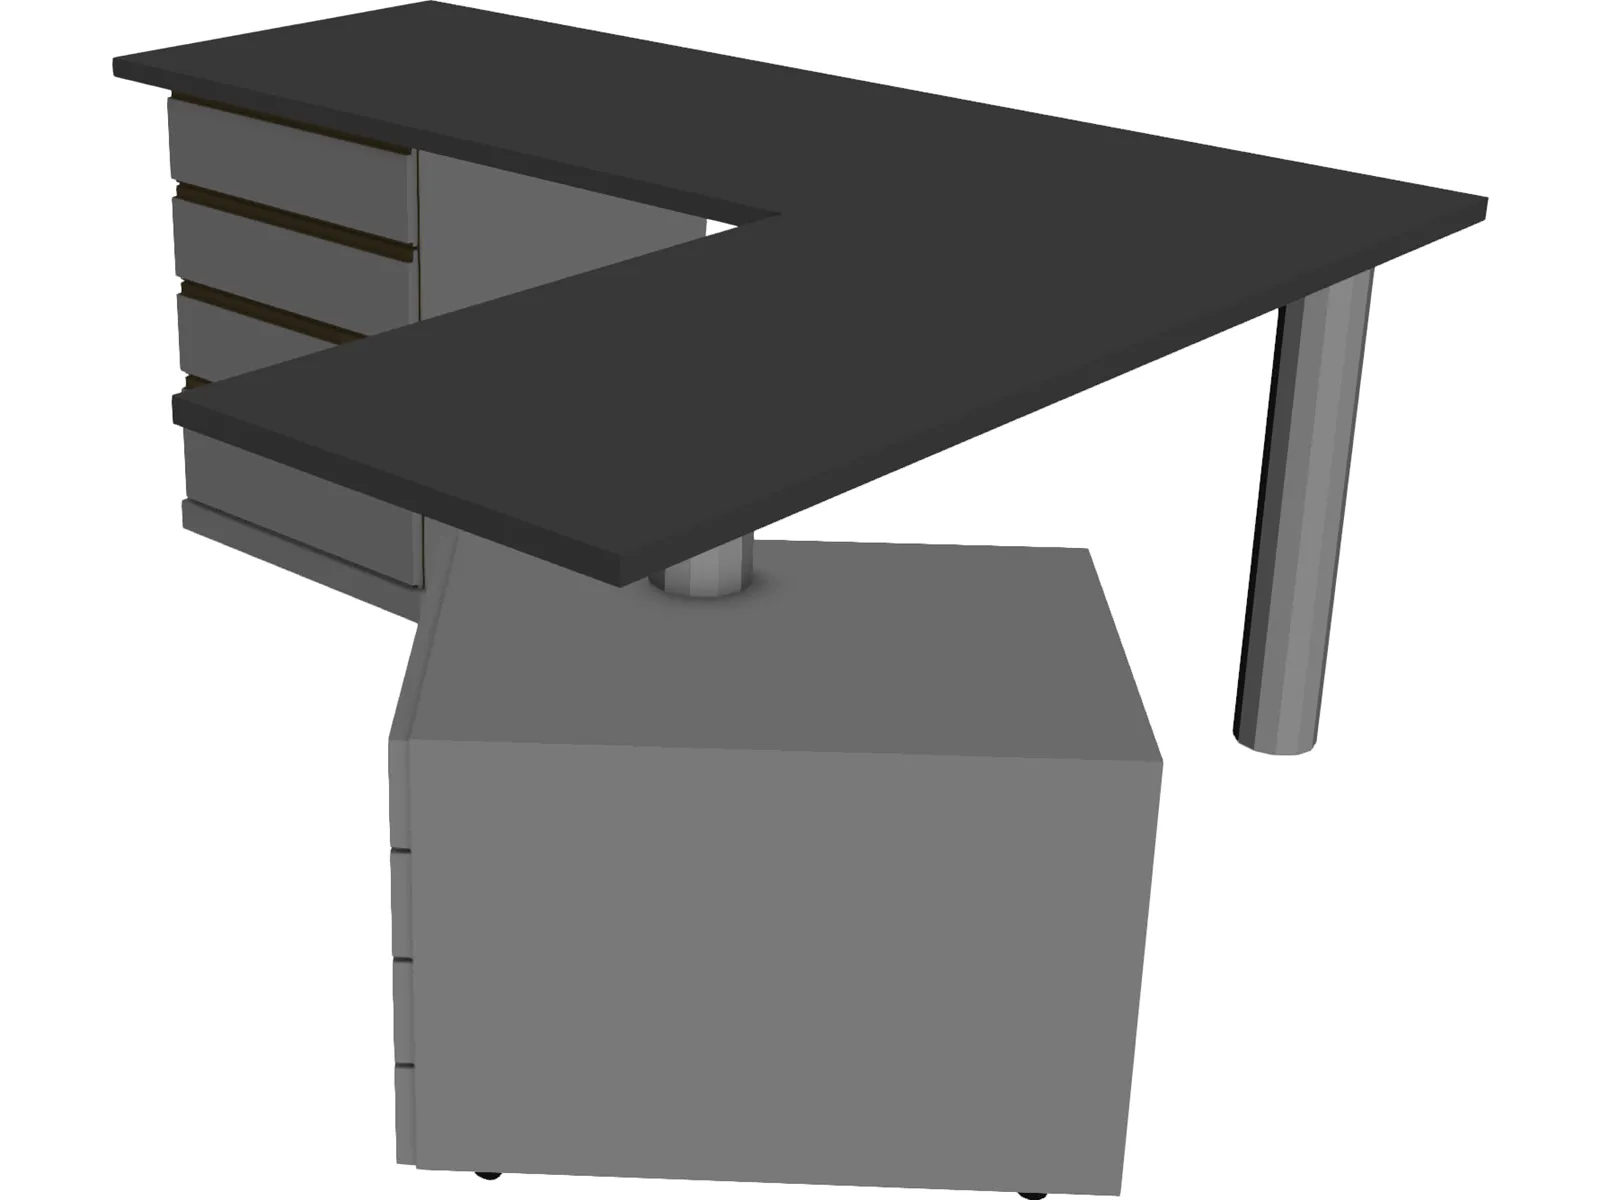 Work Desk 3D Model